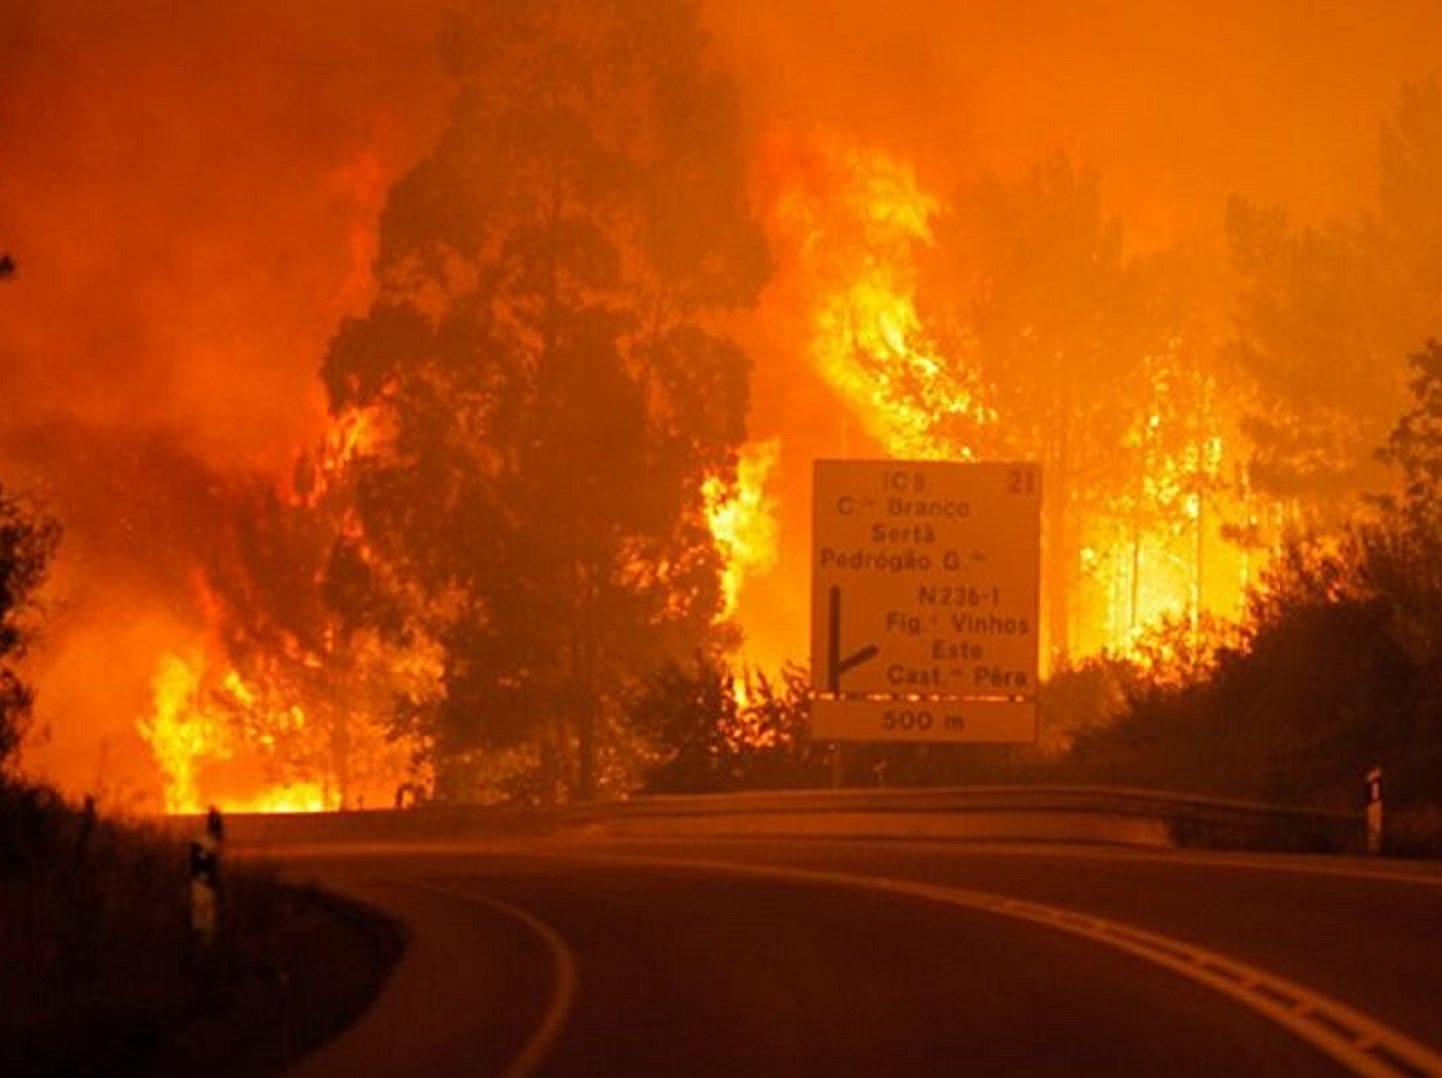 Οι πυρκαγιές στη βλάστηση συνεχίζουν να προκαλούν όλεθρο στην Ευρώπη.  ΣΥΓΚΛΟΝΙΣΤΙΚΟ ΒΙΝΤΕΟ από την Ισπανία